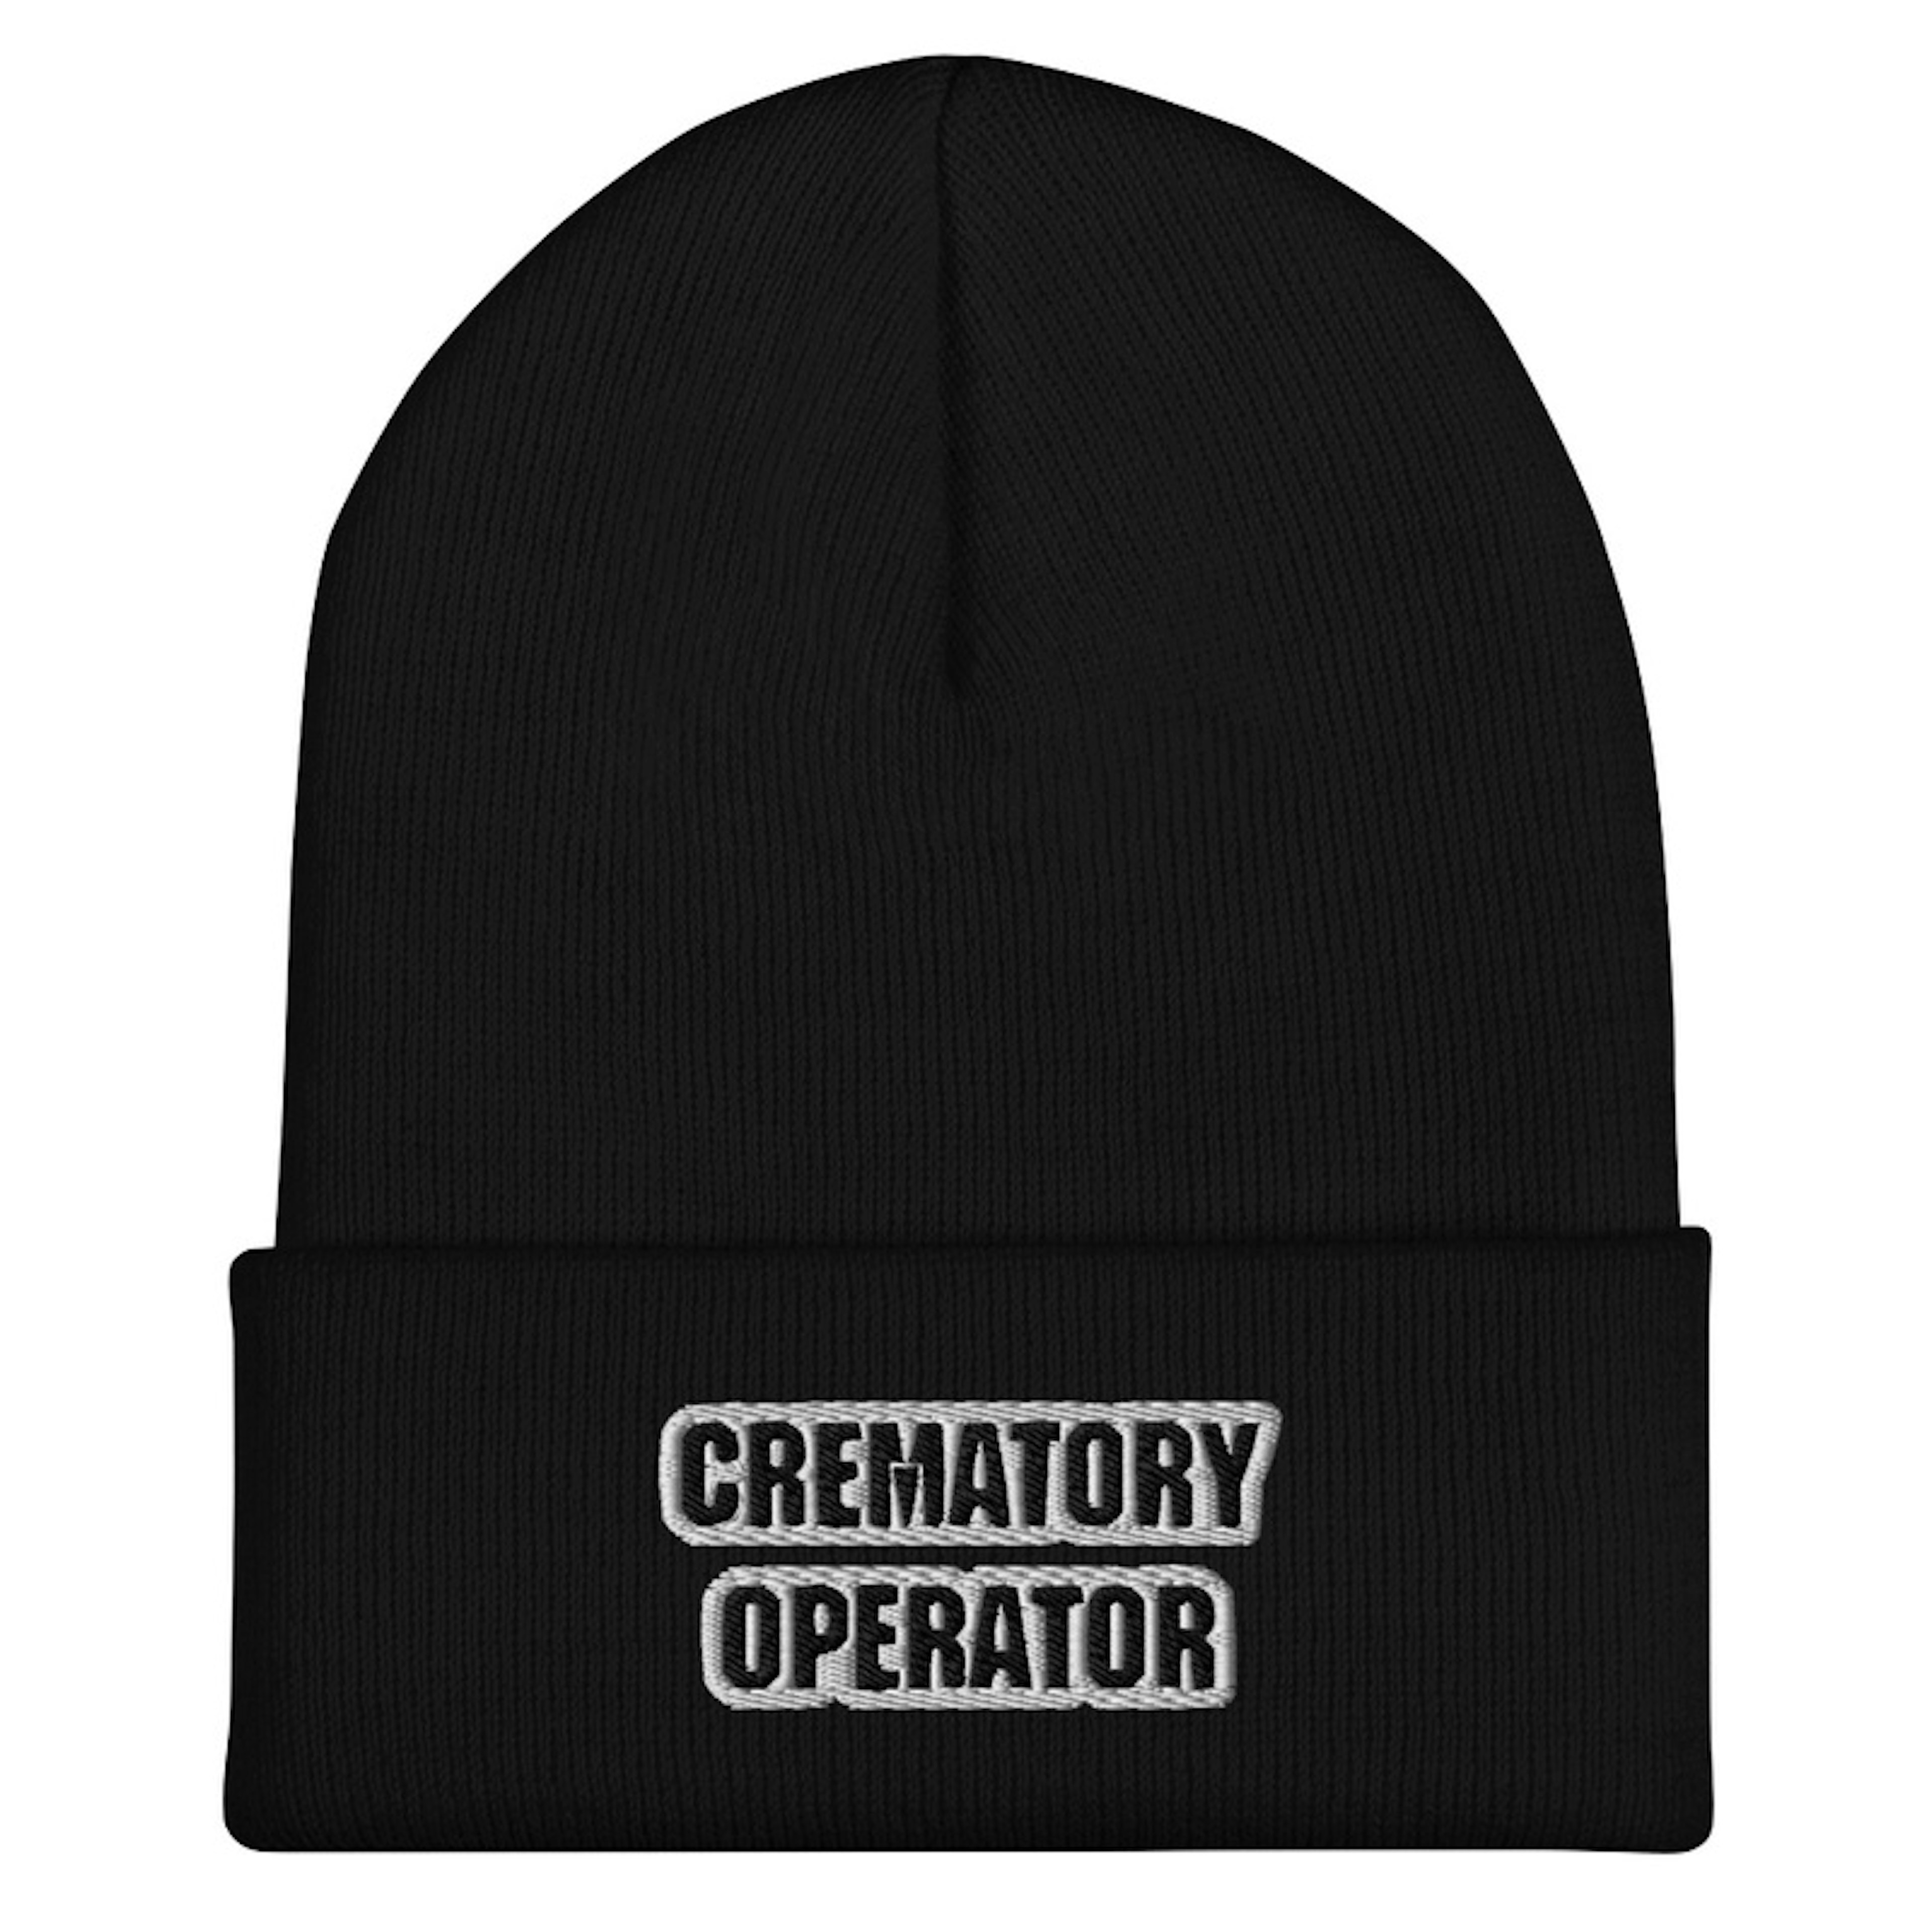 Crematory Operator Beanie